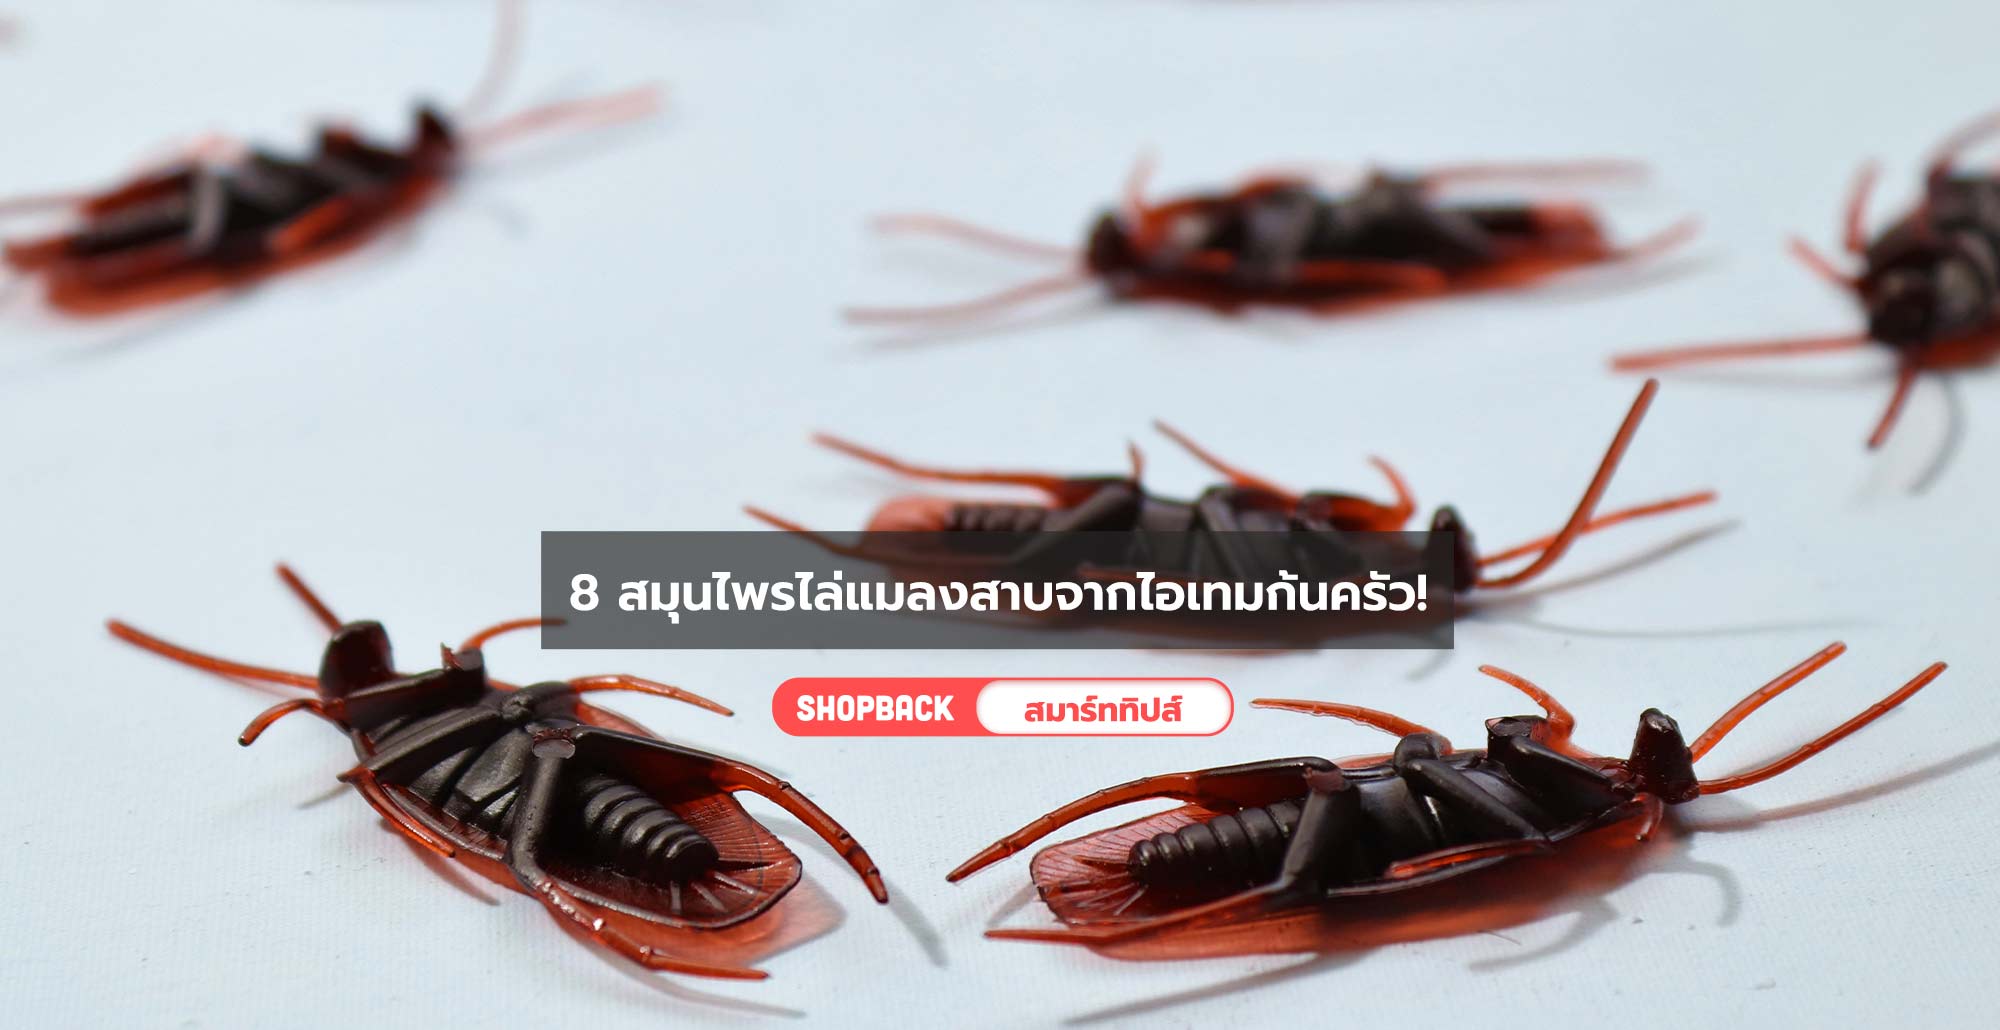 8 สมุนไพรไล่แมลงสาบ ไอเทมก้นครัวที่ช่วยไล่แมลงสาบตัวร้ายได้จริง